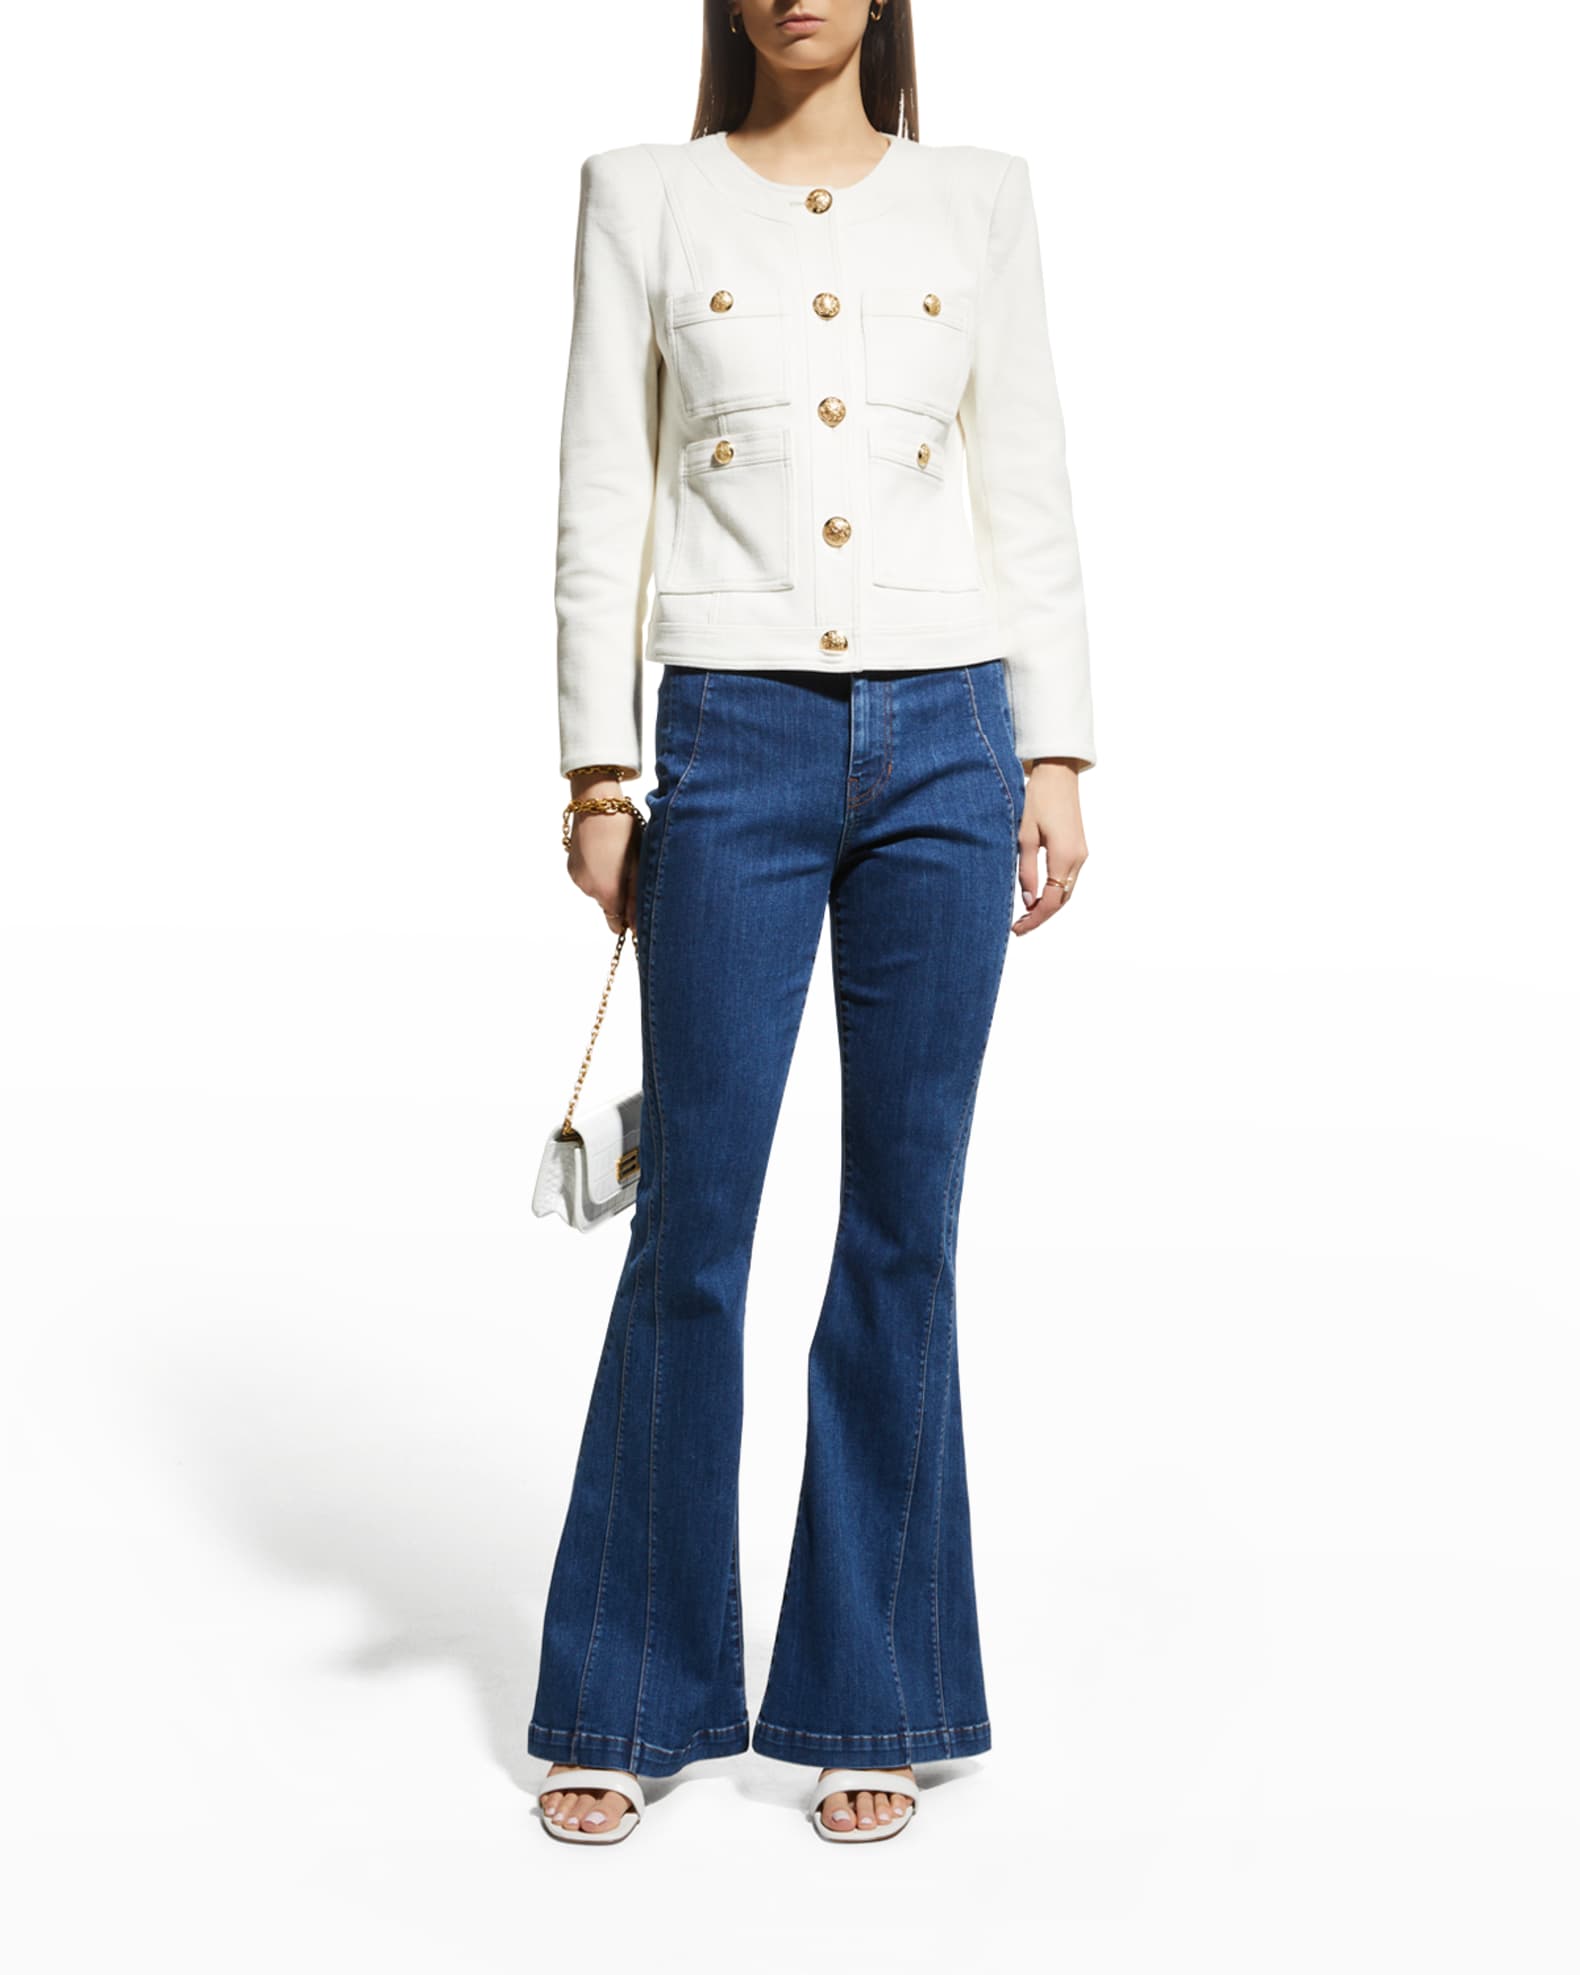 Veronica Beard Ferazia Textured Jacket | Neiman Marcus